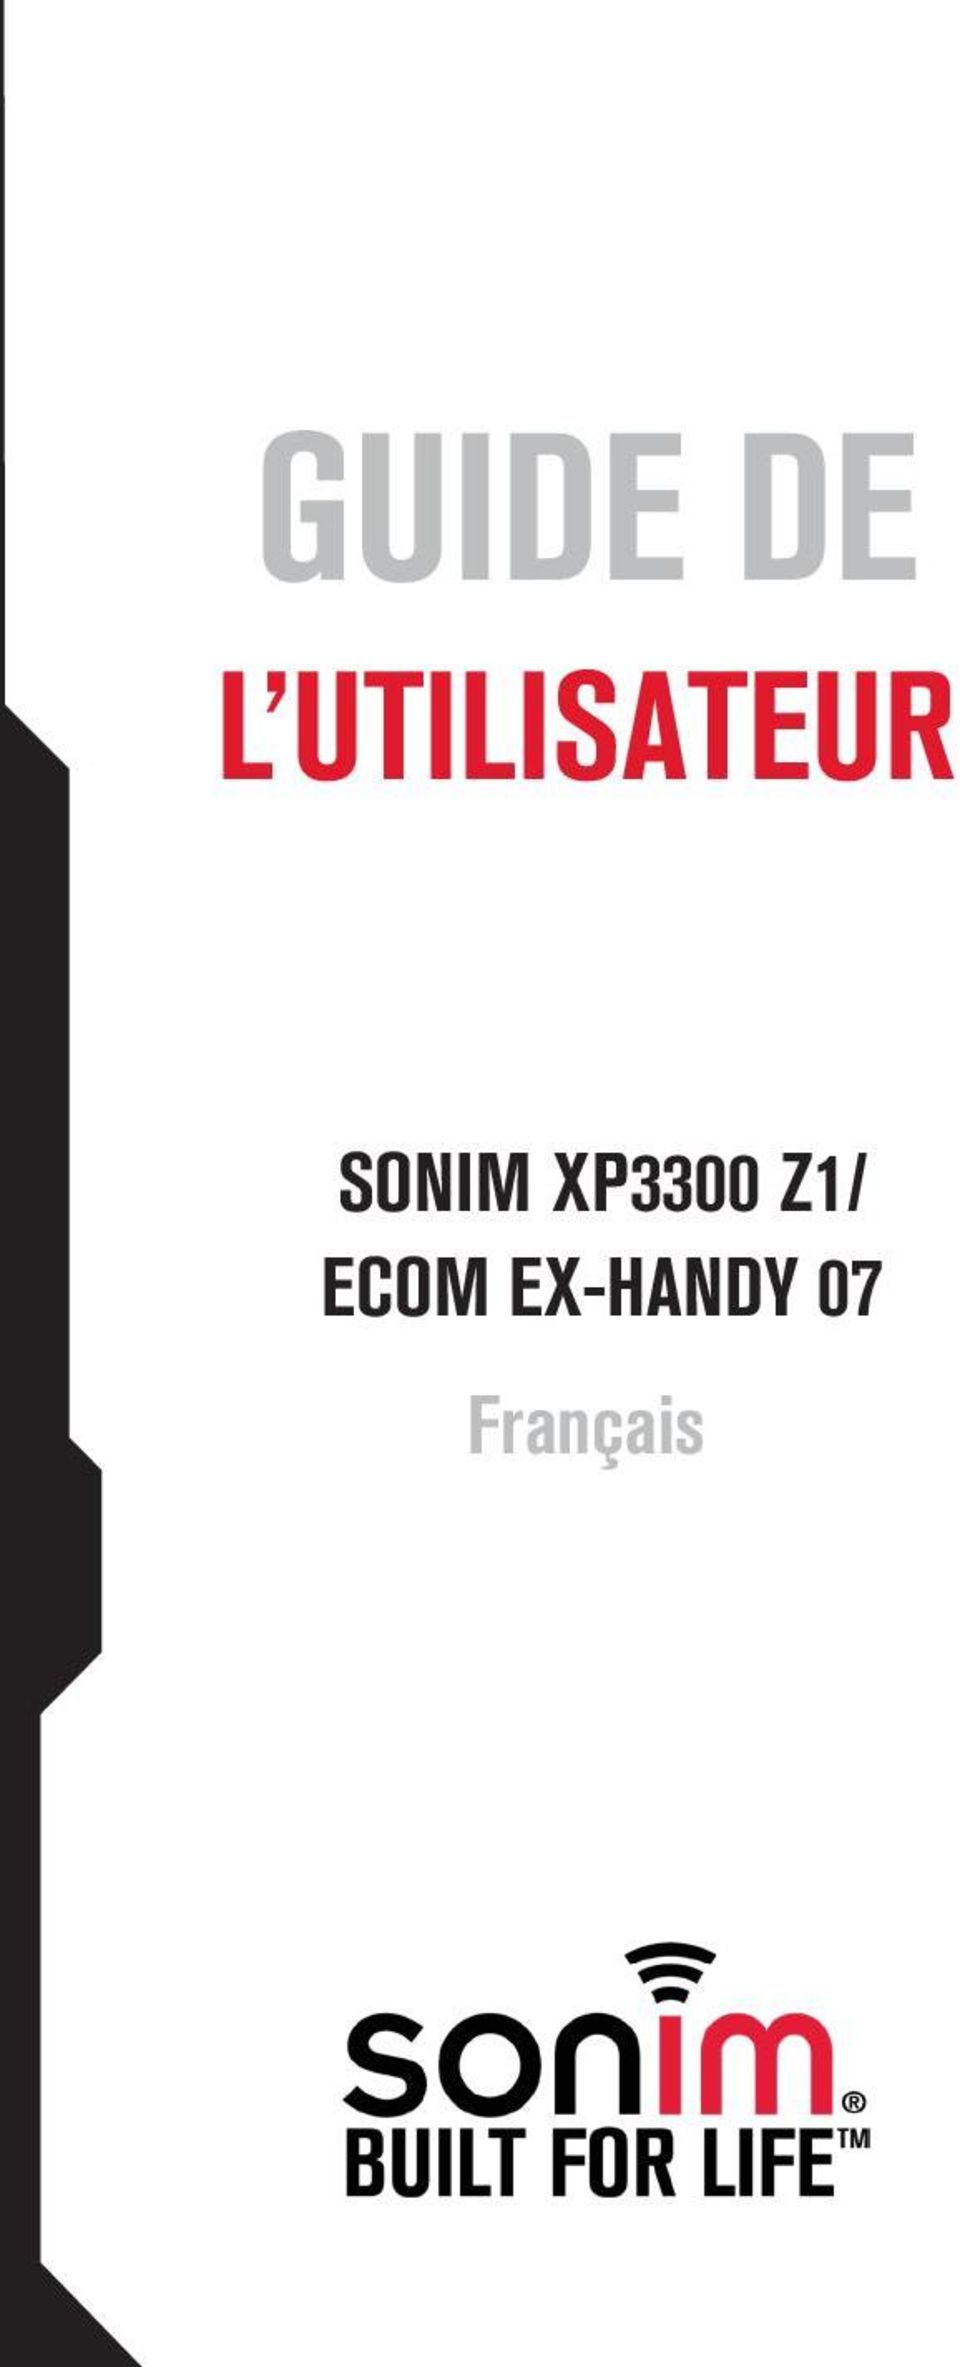 SONIM XP3300 Z1/